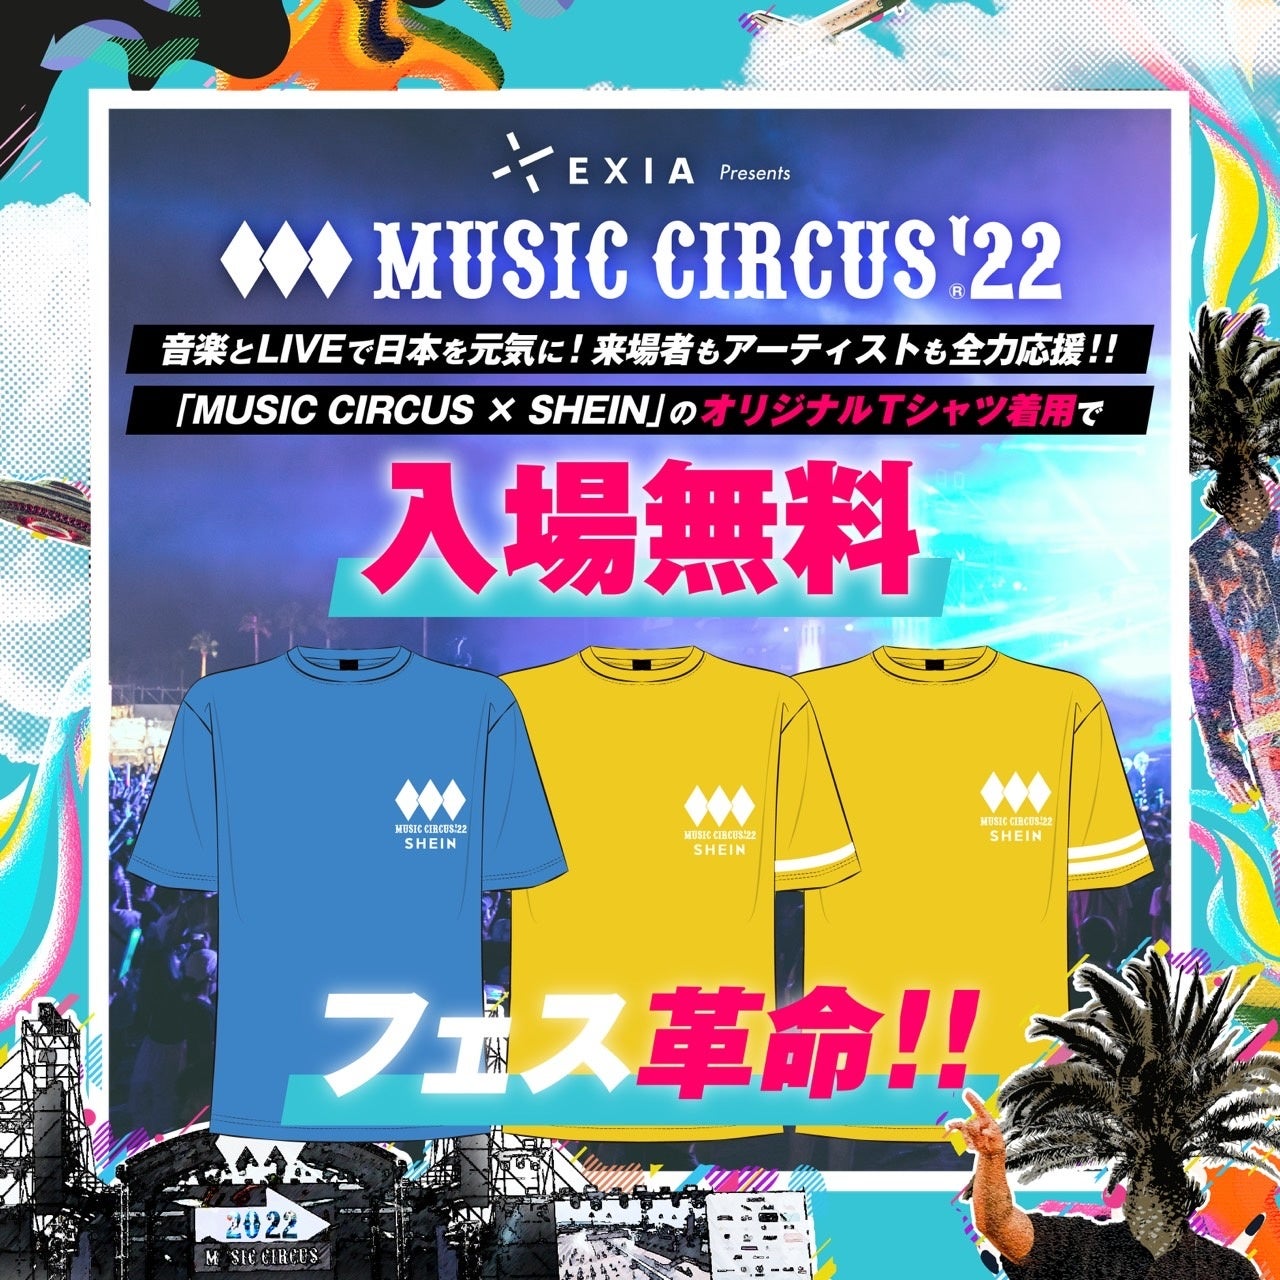 音楽とLIVEで日本を元気に！来場者もアーティストも全力応援！大阪 夏フェス「MUSIC CIRCUS」が気になる続報発表！